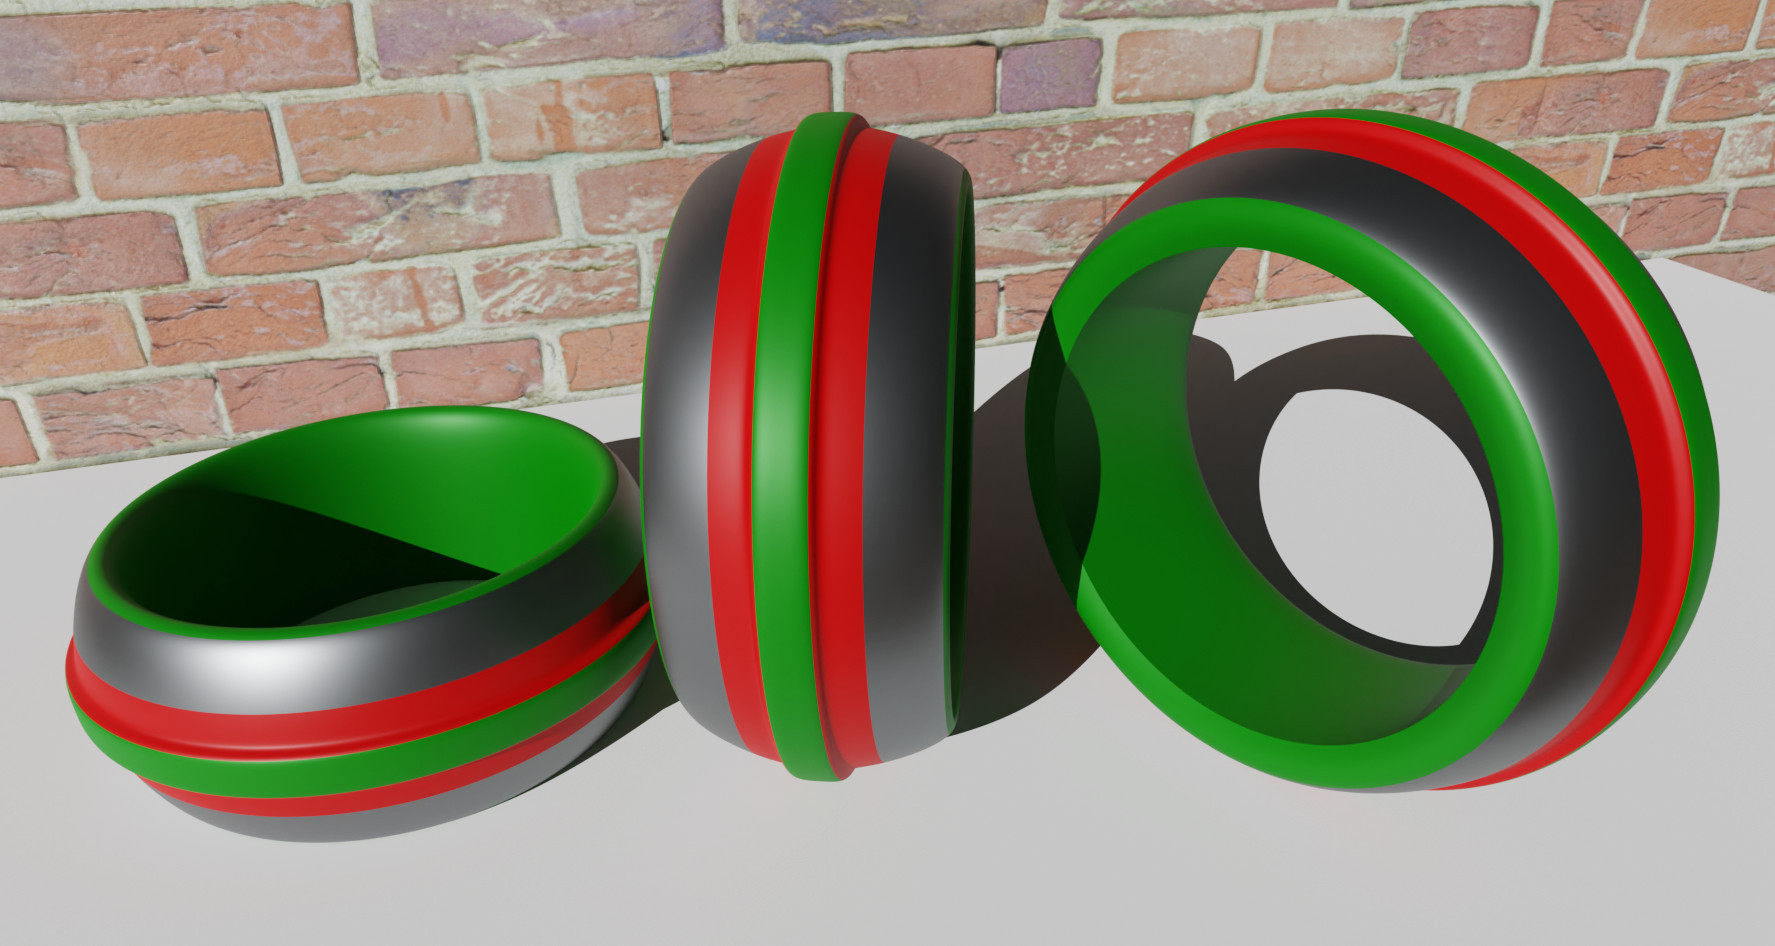 Abb. 4: 3D-Bild einer sehr komplexen Abdeckung. Grün ist ein Abdecklack, Rot ein Klebeband. Die grauen Flächen werden galvanisiert